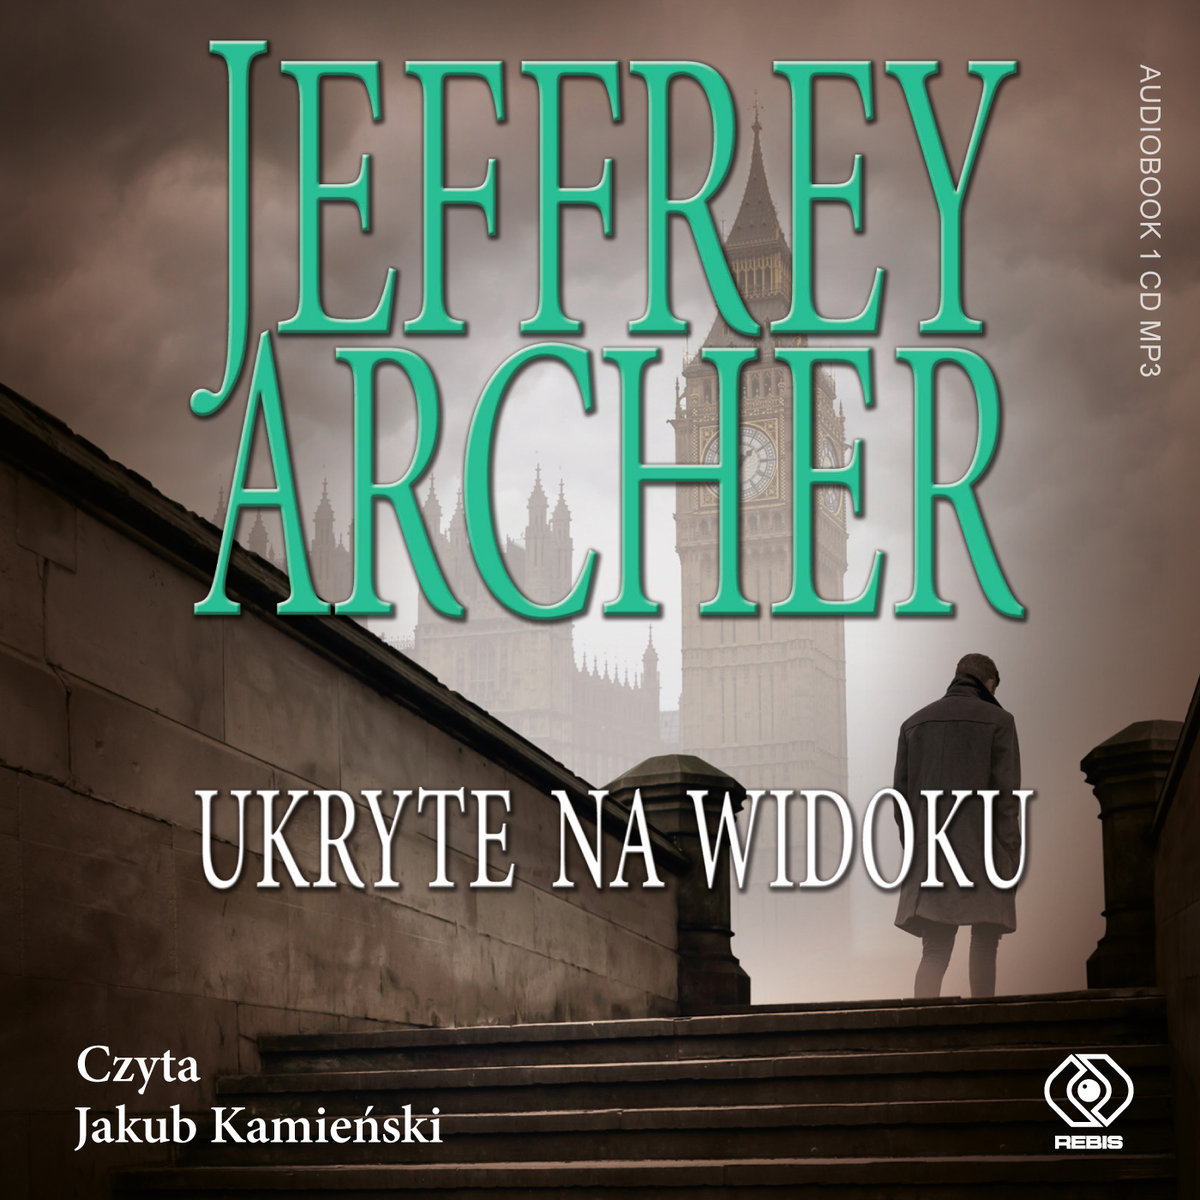 ARCHER JEFFREY – WILLIAM WARWICK 2. UKRYTE NA WIDOKU